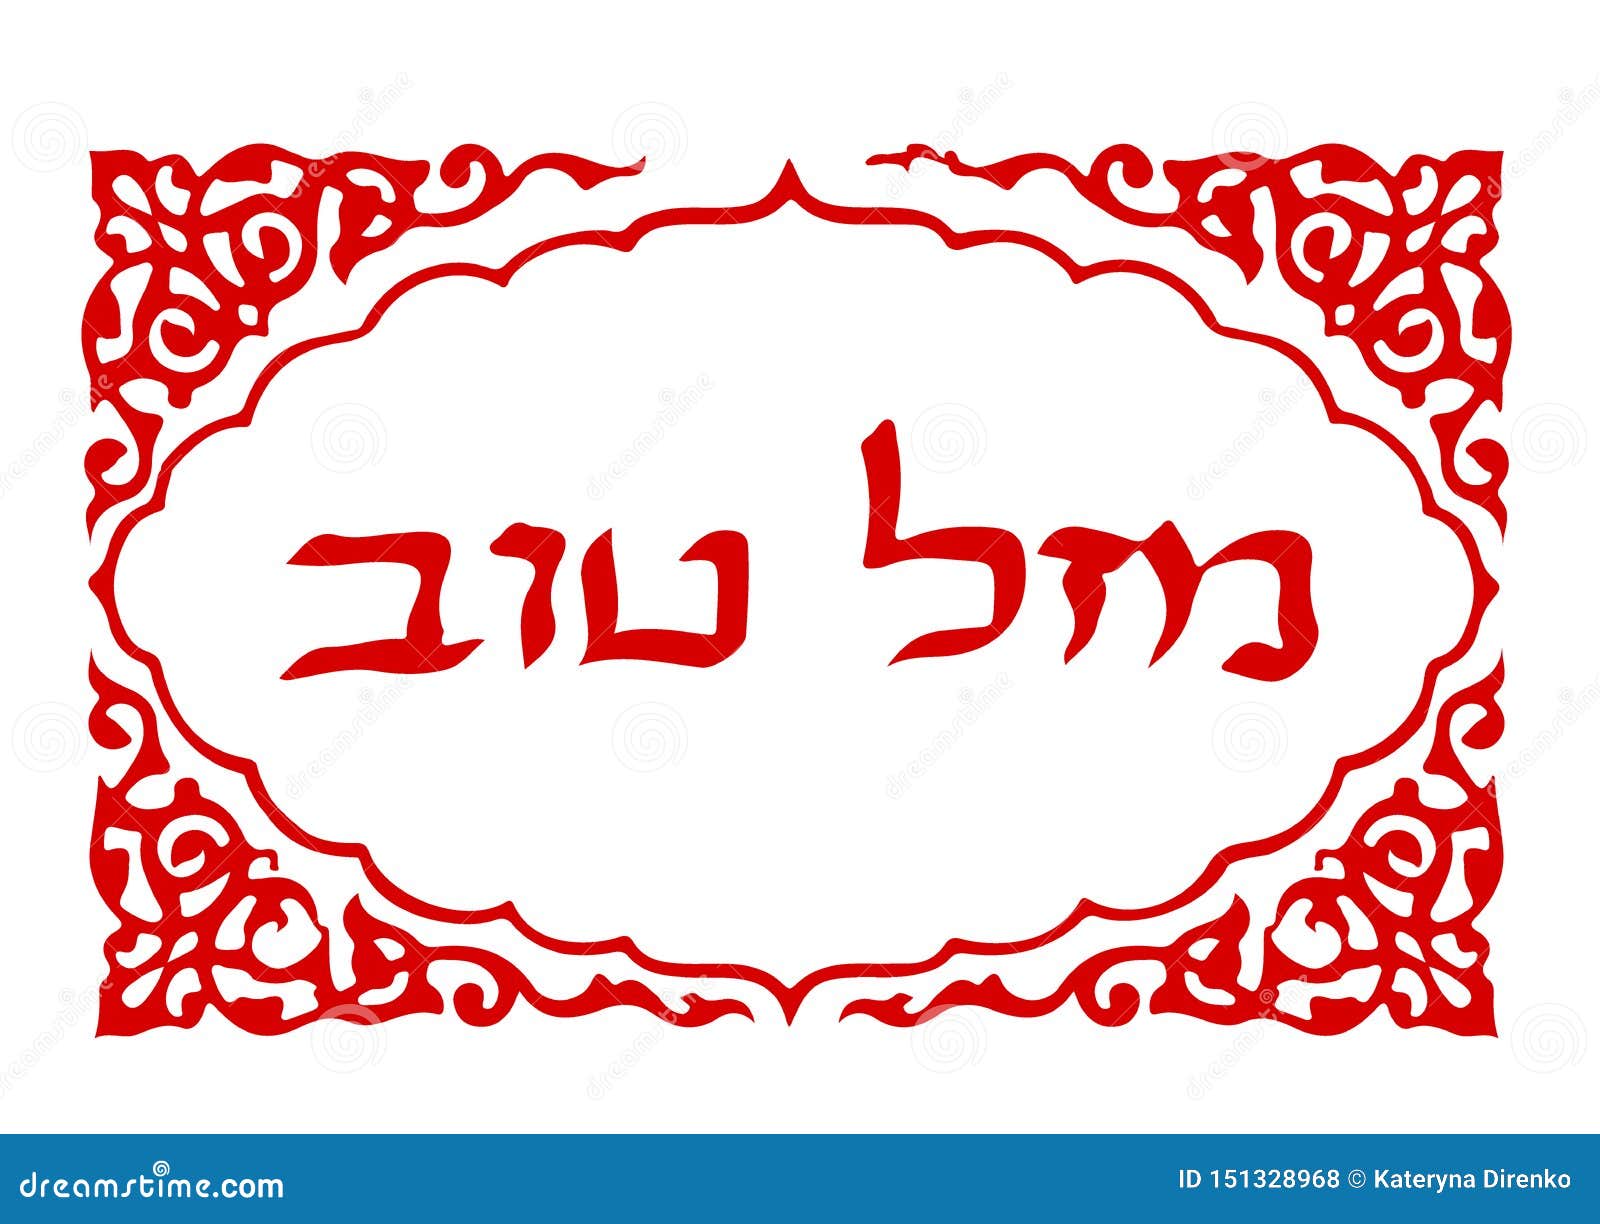 在西伯来mazl Tov的书法题字在翻译意味幸福信件希伯来语r 向量例证 插画包括有